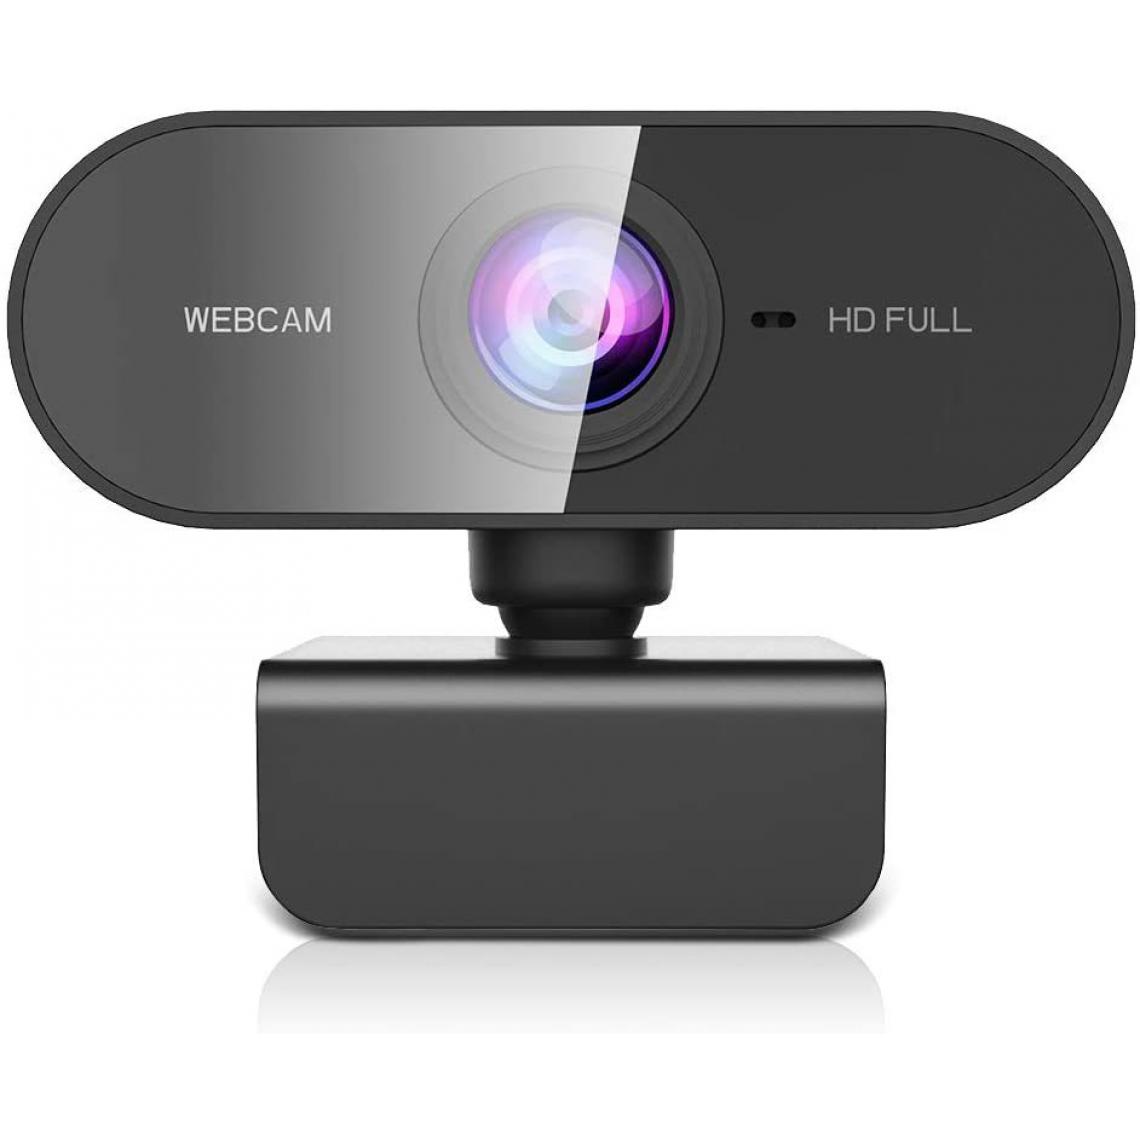 Chrono - Webcam 1080P, Full HD Webcam USB pour Youtube, Skype, Zoom, Appels Vidéo Xbox One, Etudes et Conférence, Streaming Caméra PC avec Microphone et Grand Angle, Compatible avec Windows/Mac/Android(Noir) - Autres accessoires smartphone